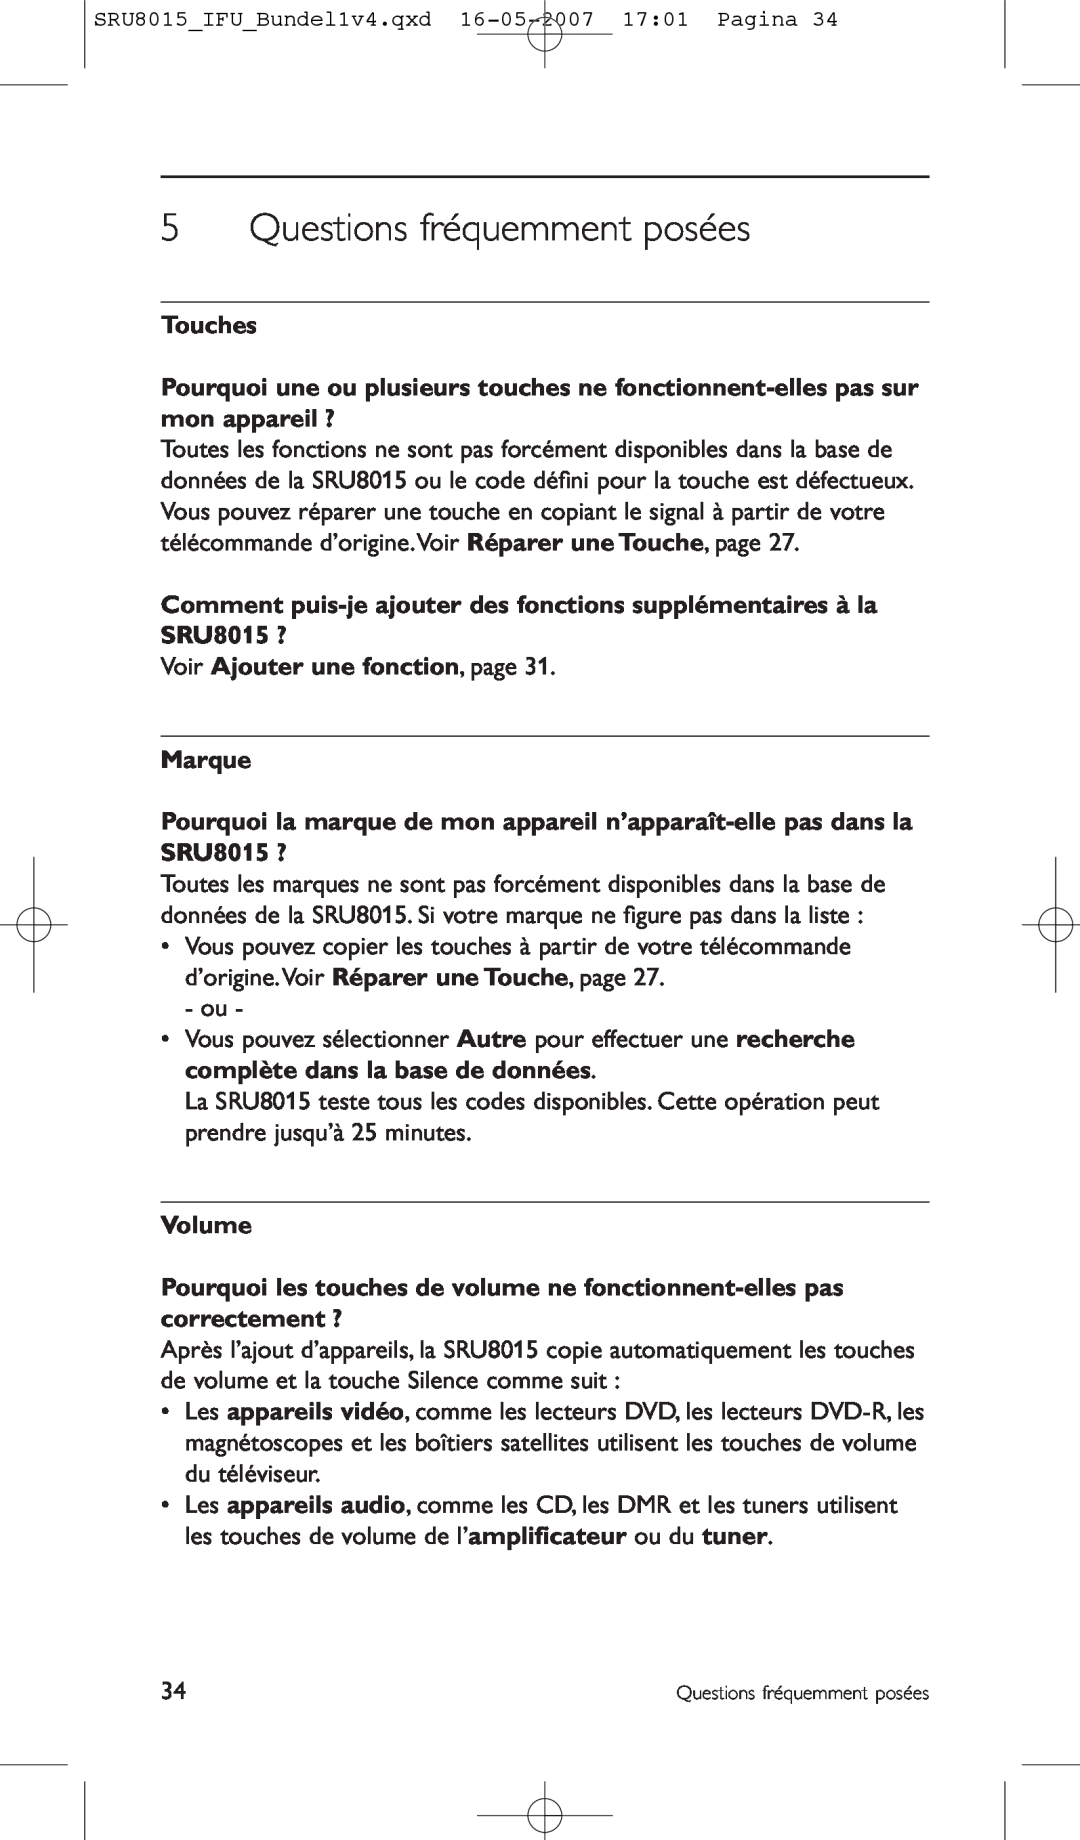 Philips SRU8015 manual Questions fréquemment posées, Touches, Voir Ajouter une fonction, page Marque, Volume 